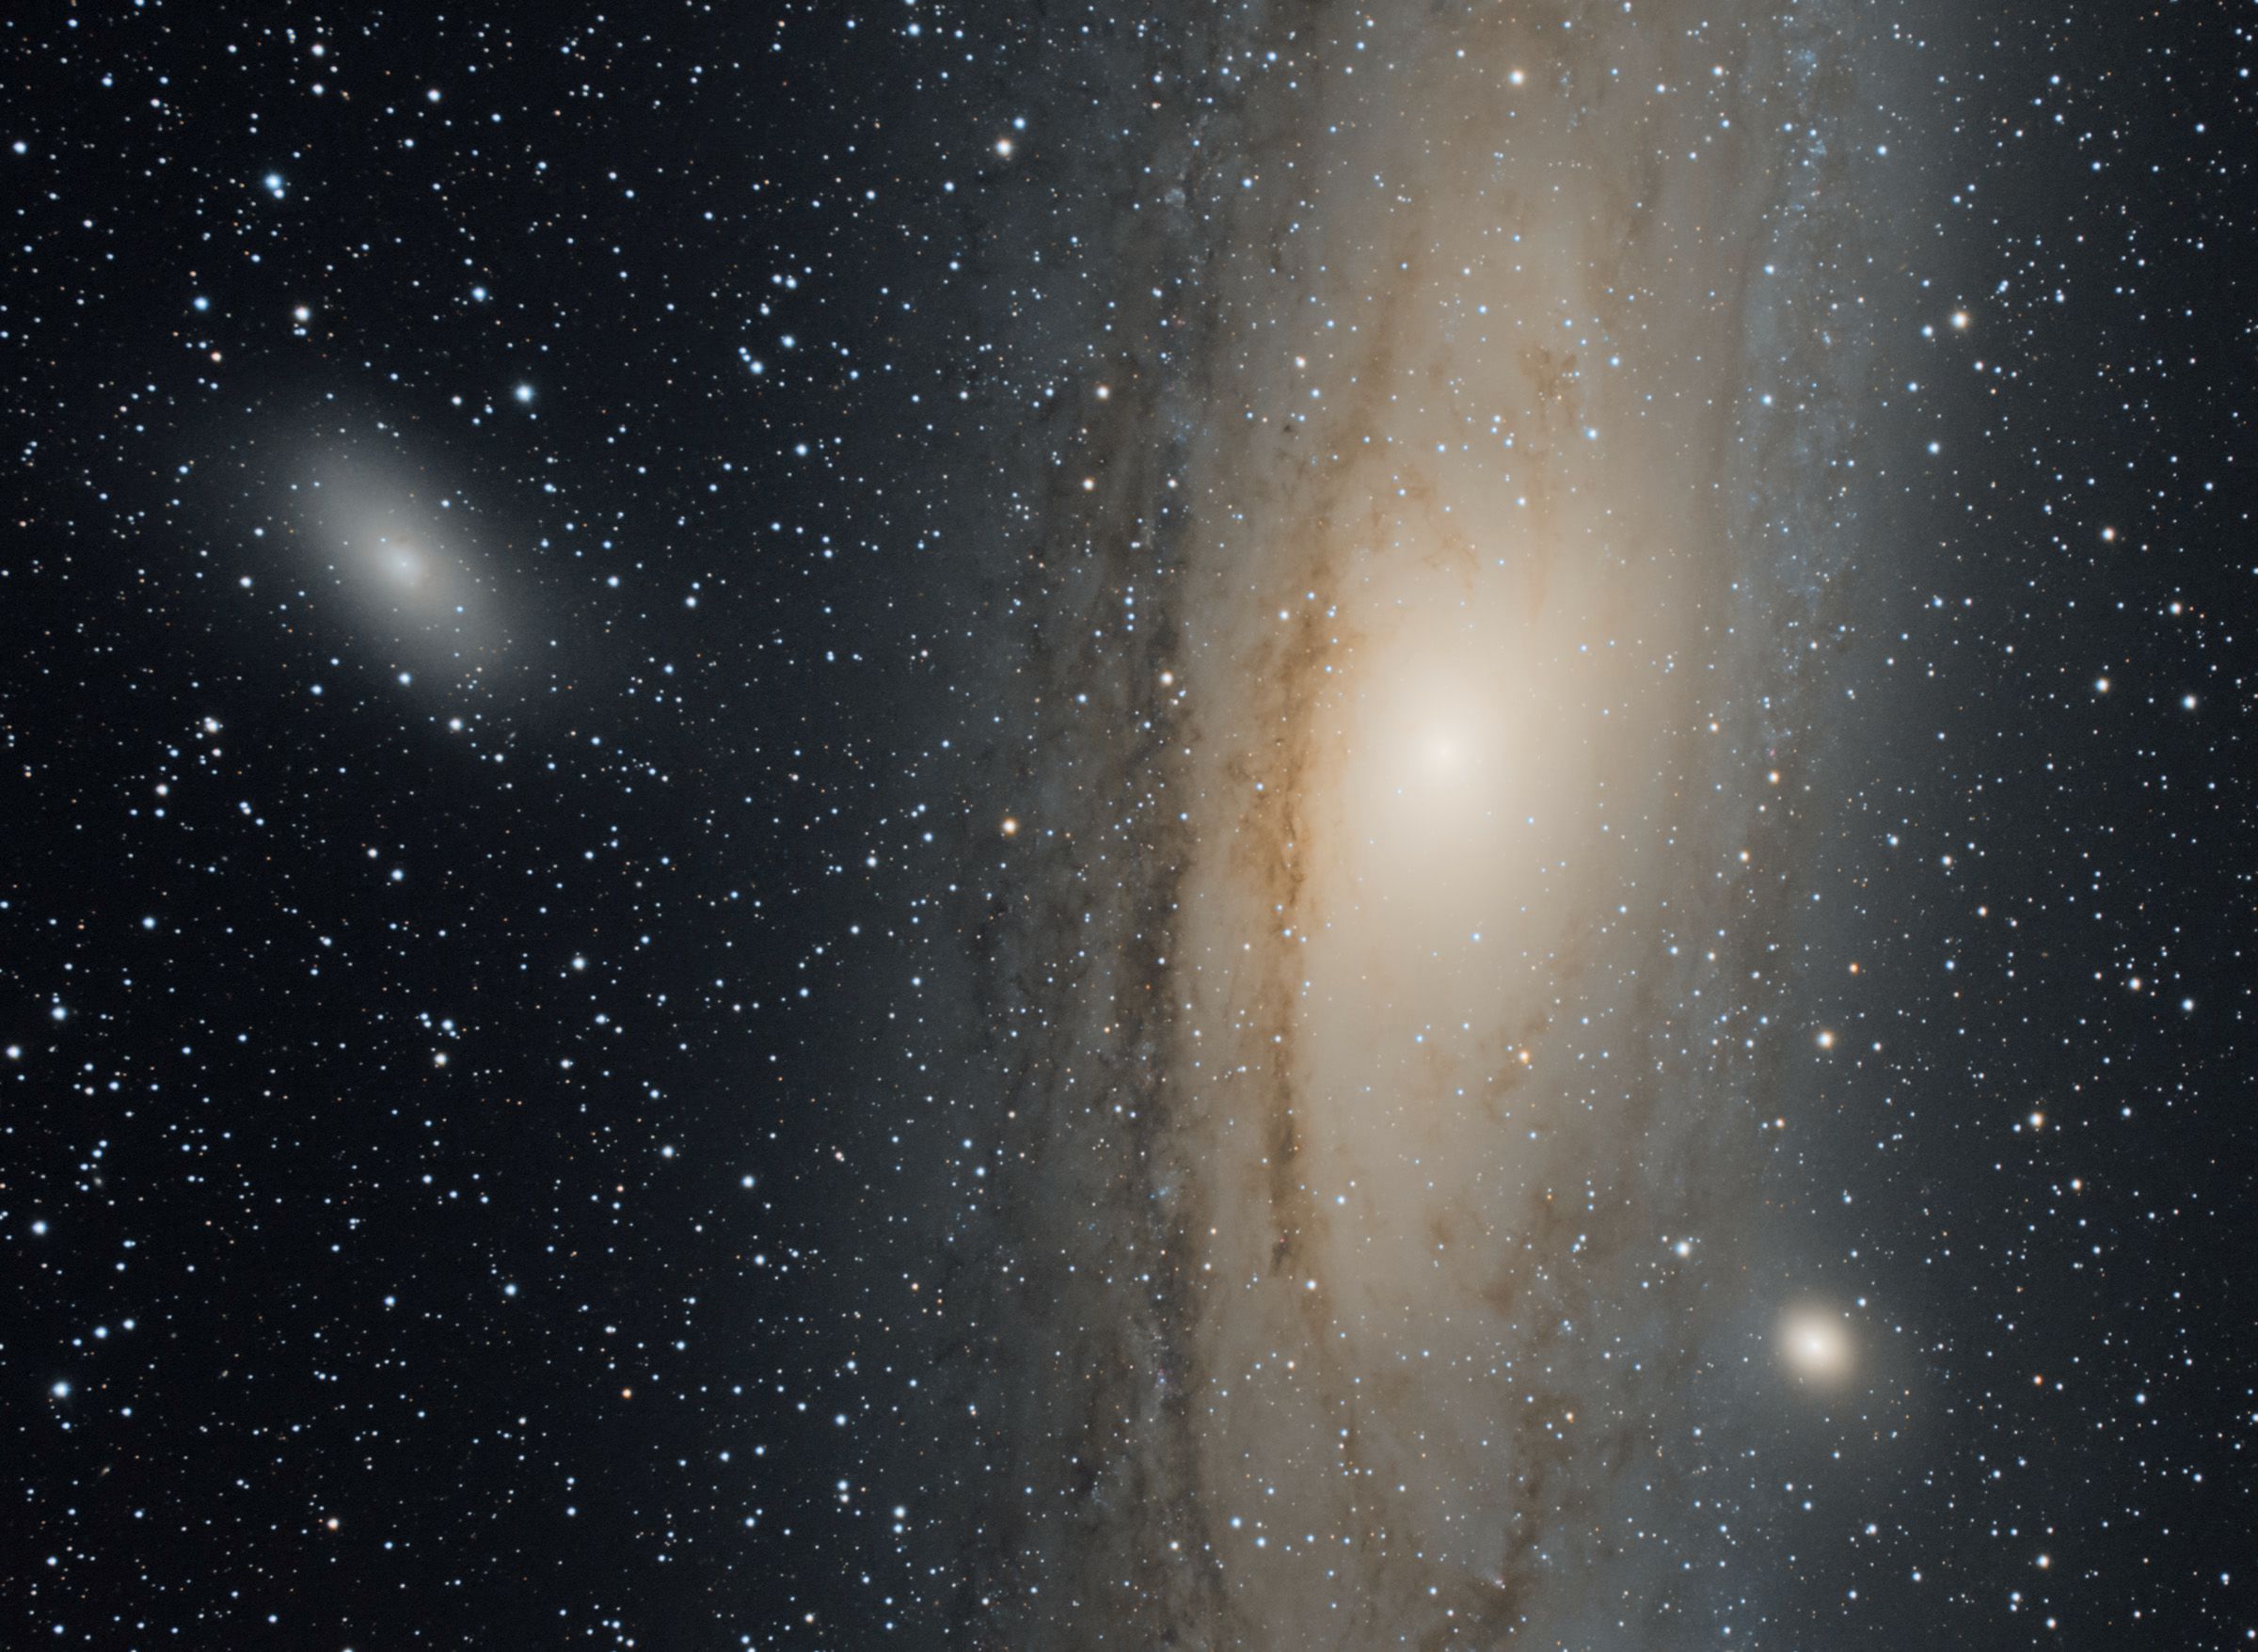 34 - M31 The Andromeda Galaxy